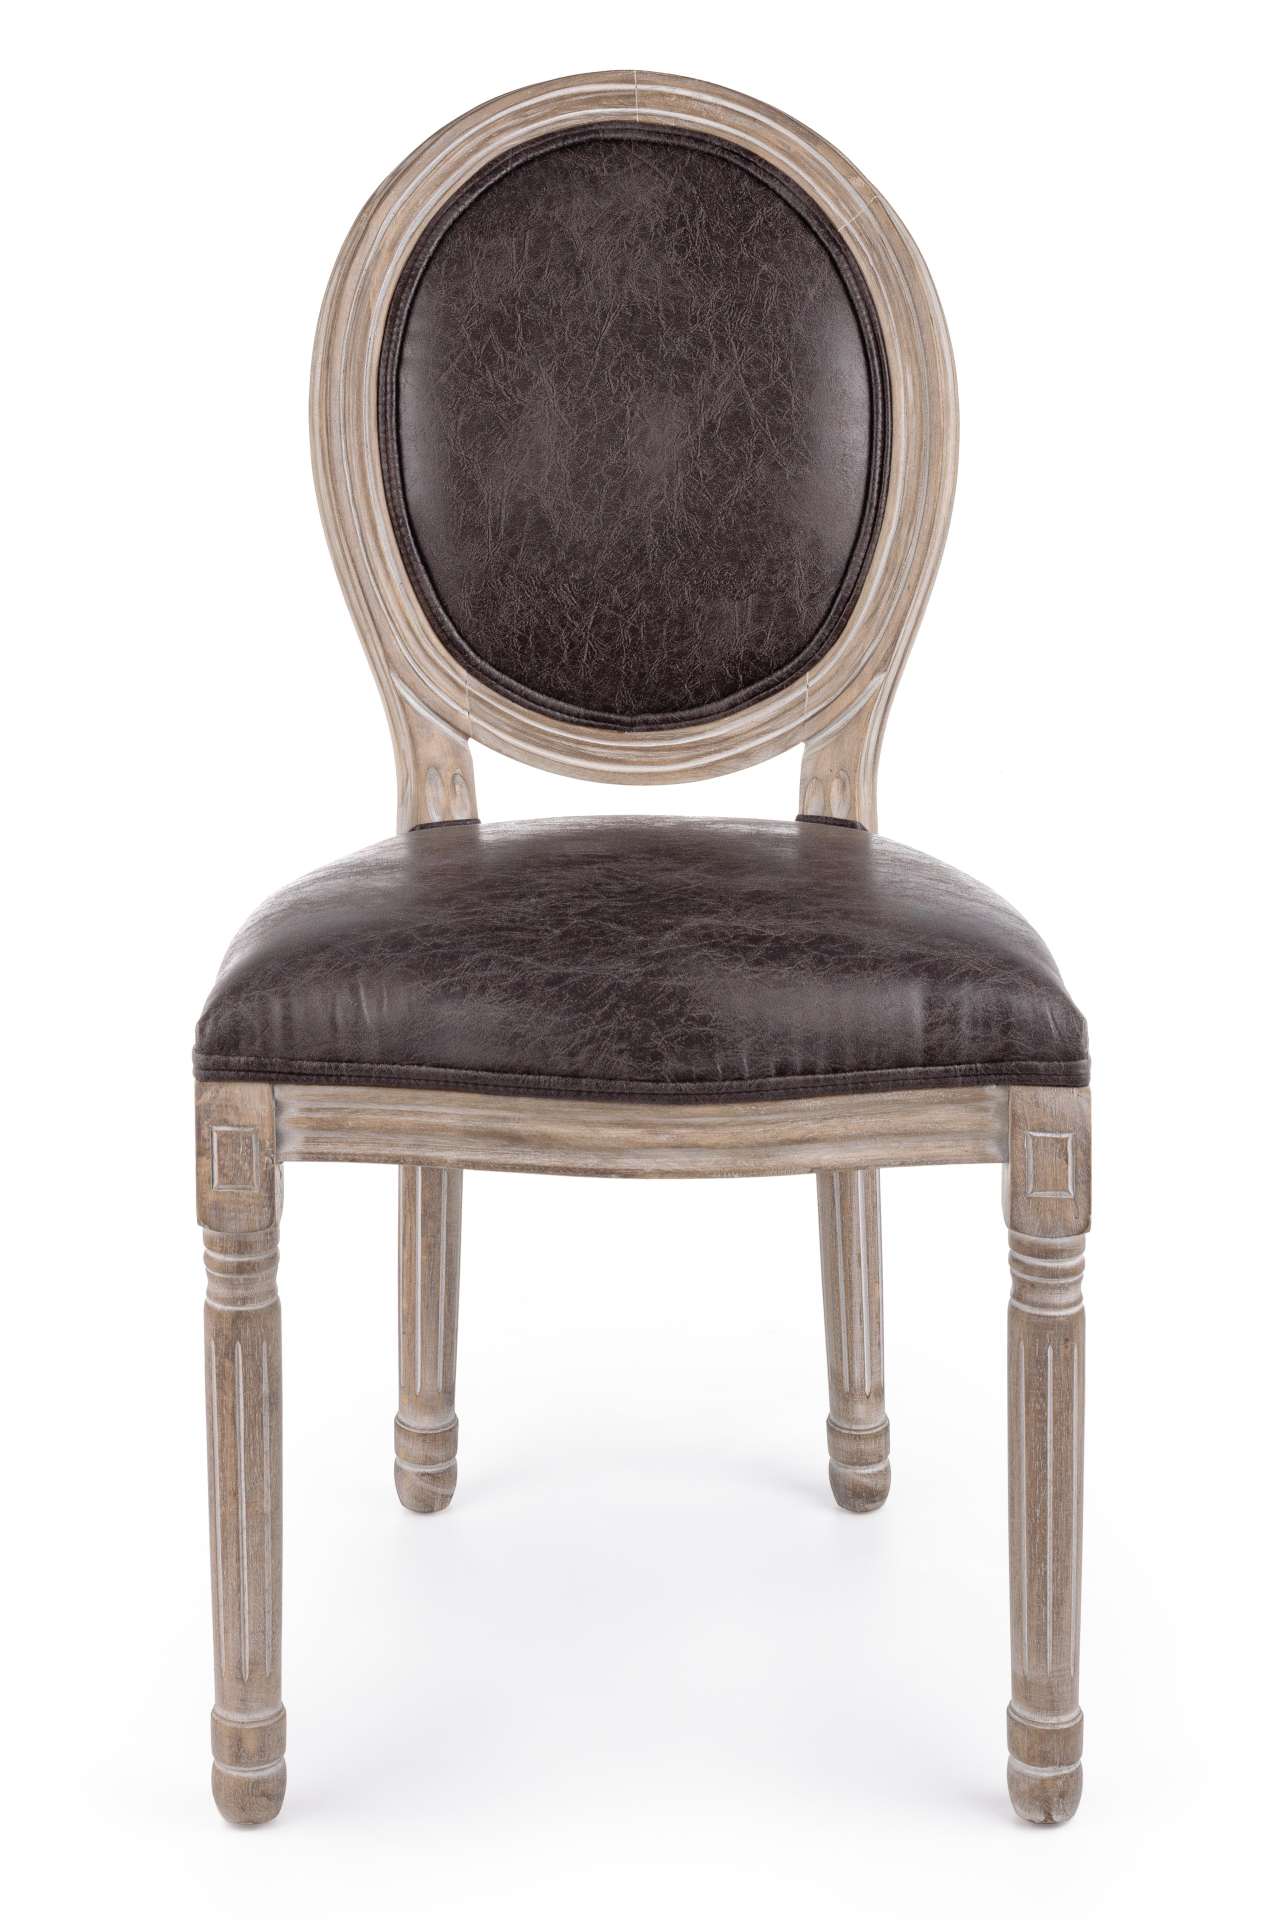 Der Stuhl Mathilde überzeugt mit seinem klassischem Design gefertigt wurde der Stuhl aus Birkenholz, welches natürlich gehalten ist. Die Sitz- und Rückenfläche ist aus einem Kunststoff-Bezug, welcher einen braunen Farbton besitzt. Die Sitzhöhe beträgt 48 